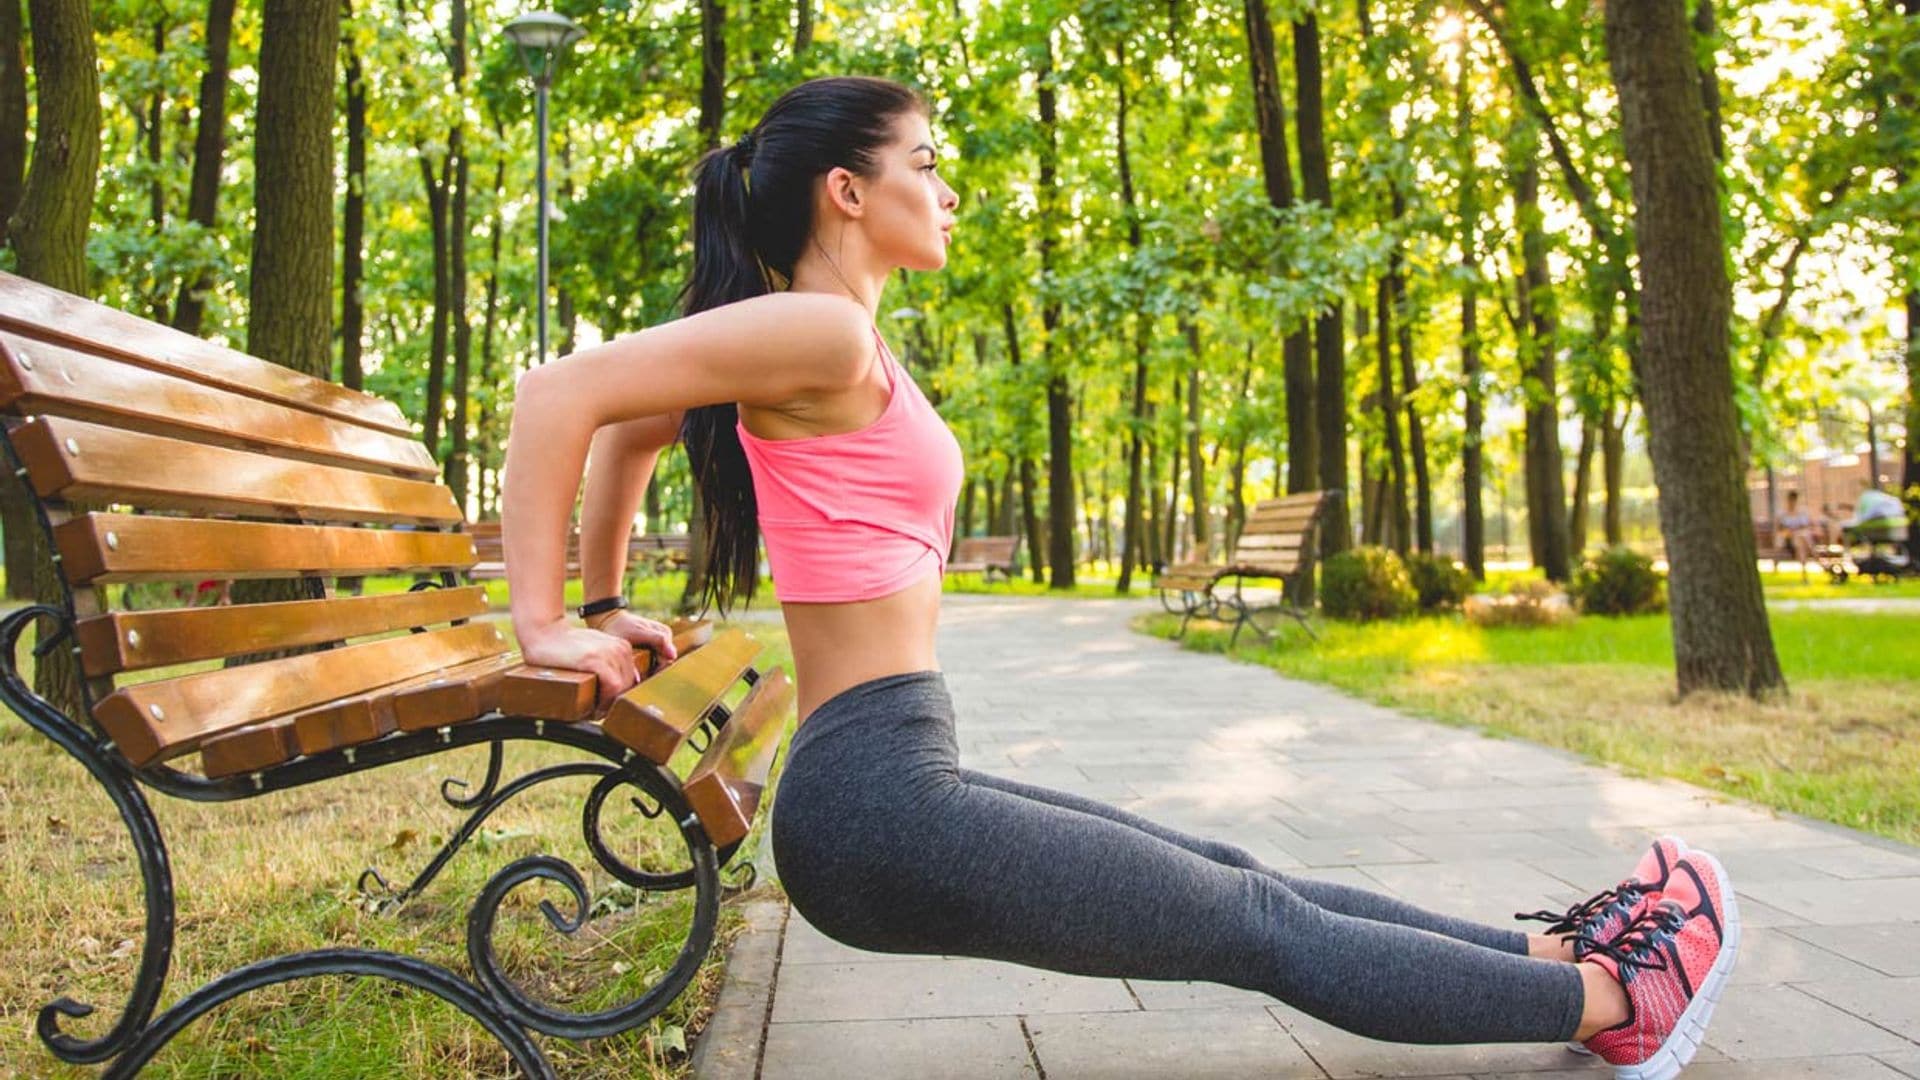 10 ejercicios para ponerte en forma en los que solo necesitas un banco del parque